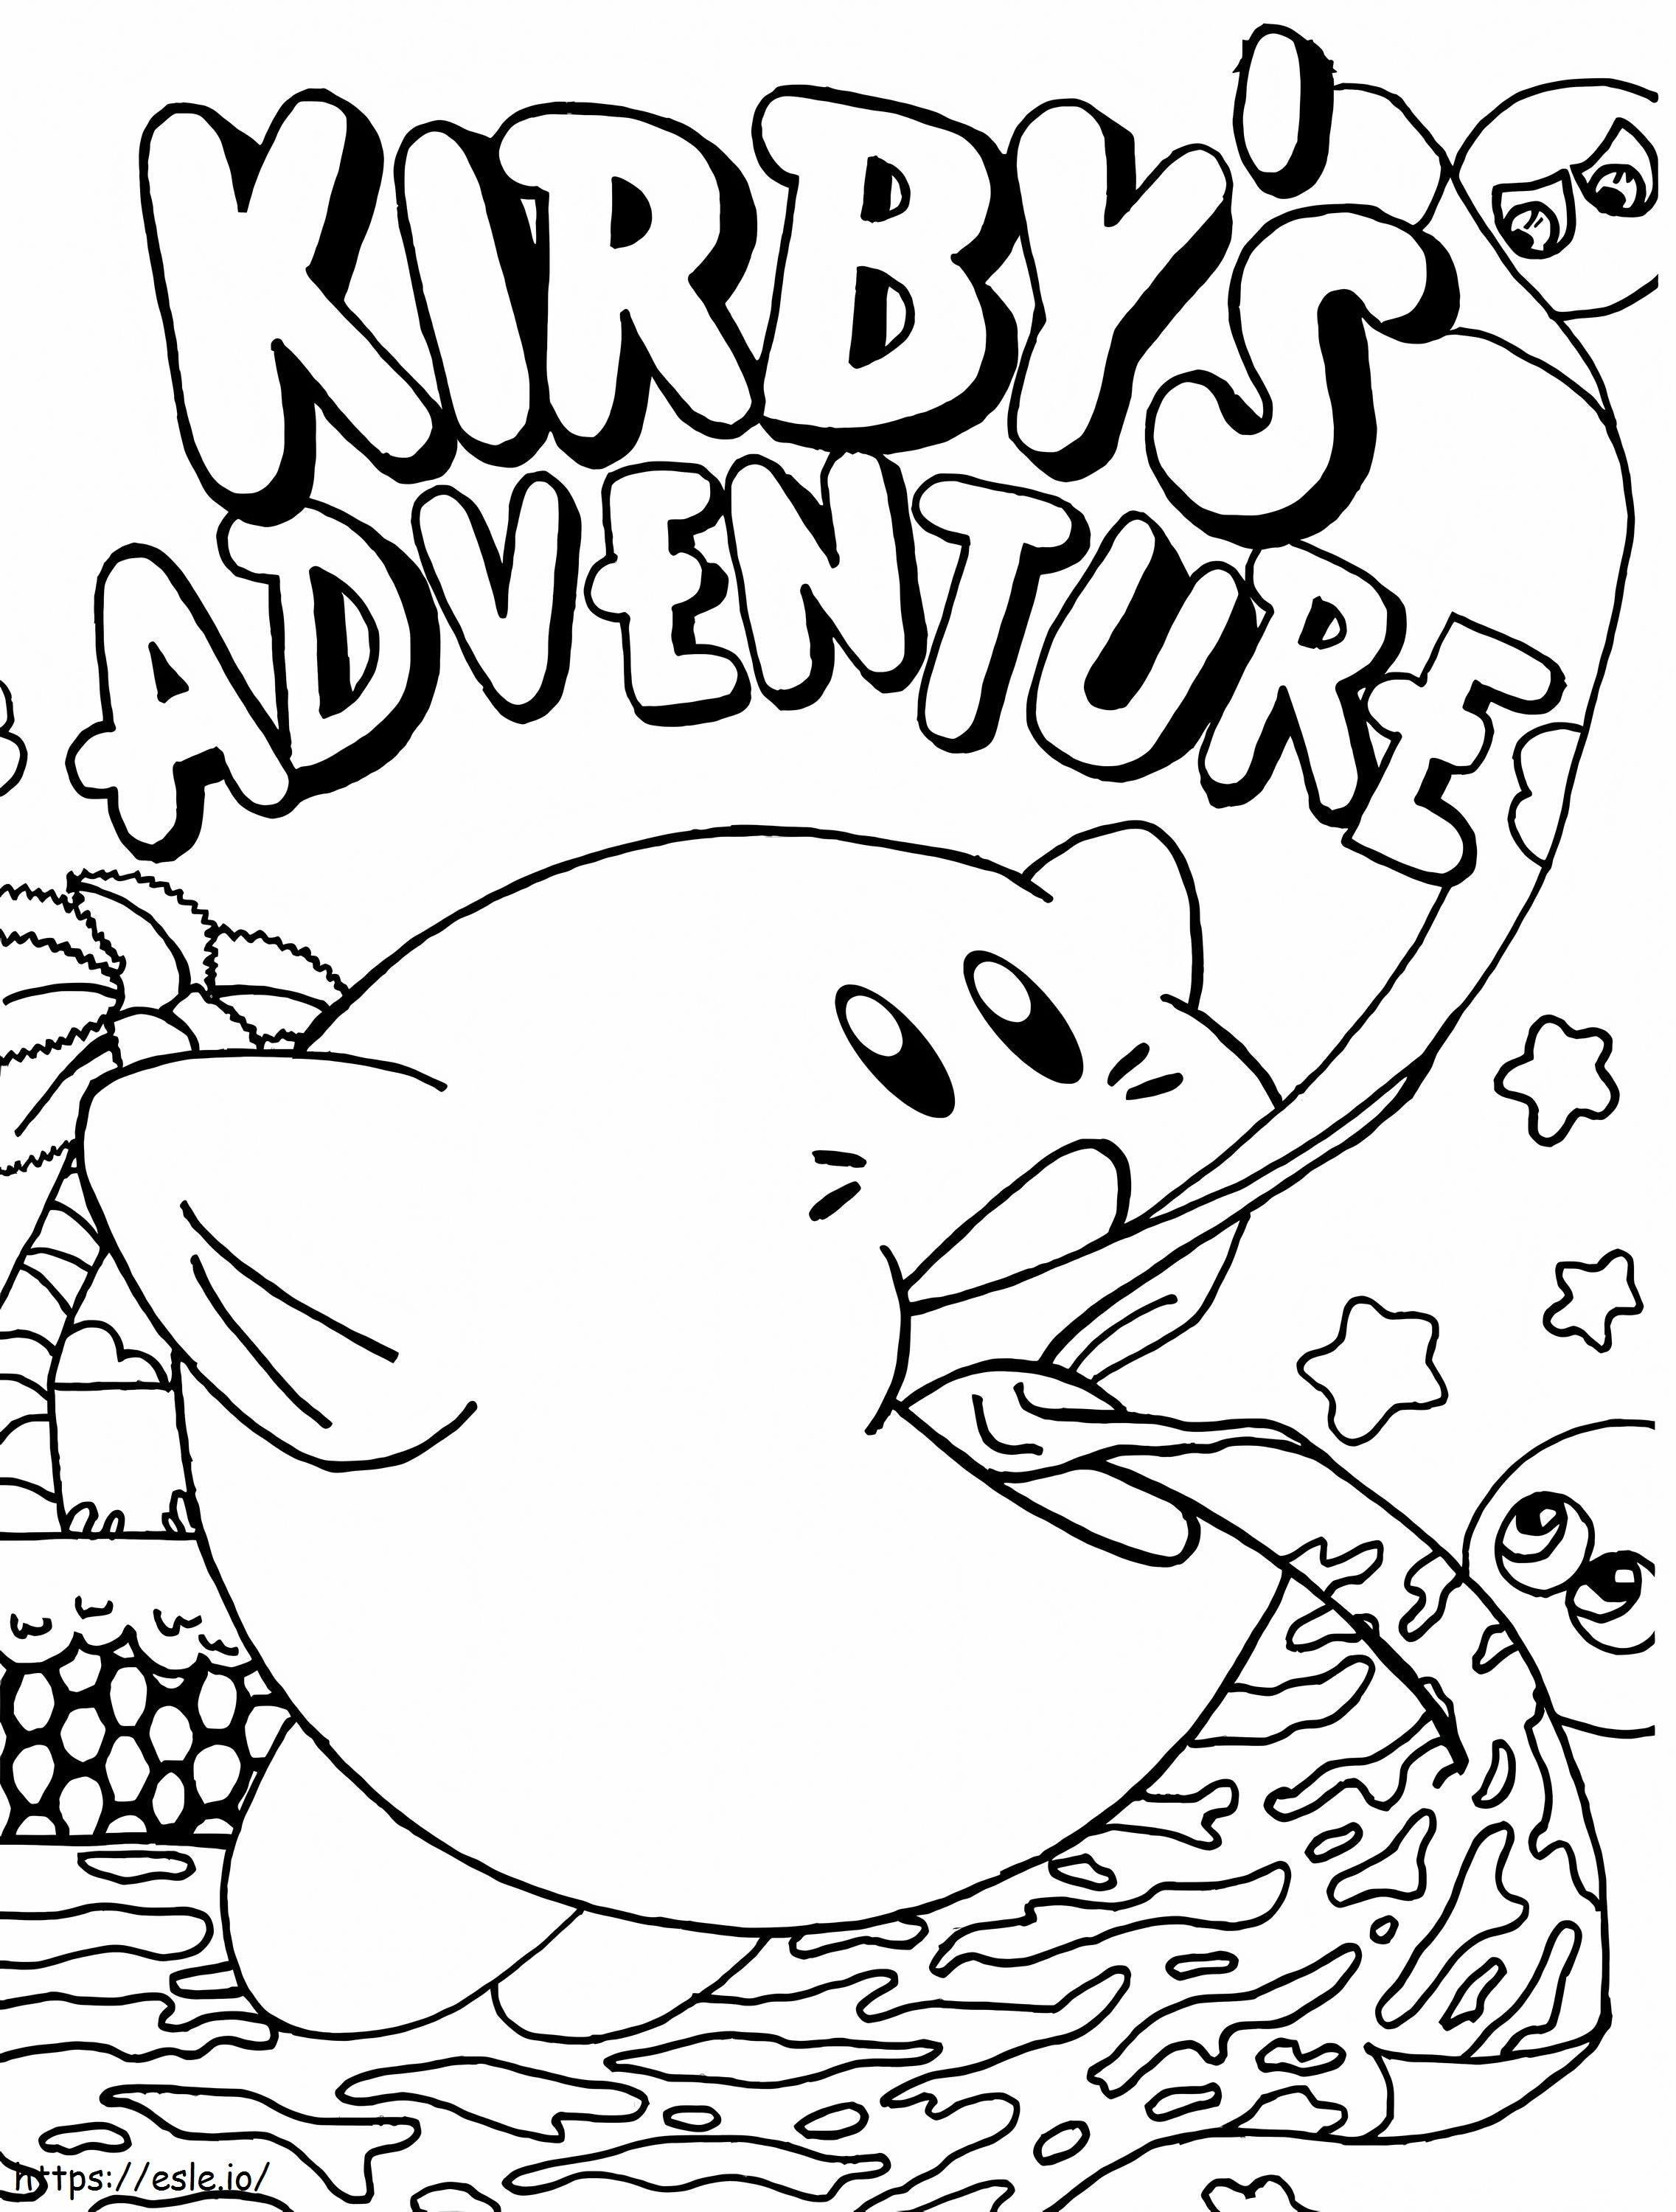 Kirby's avontuur kleurplaat kleurplaat